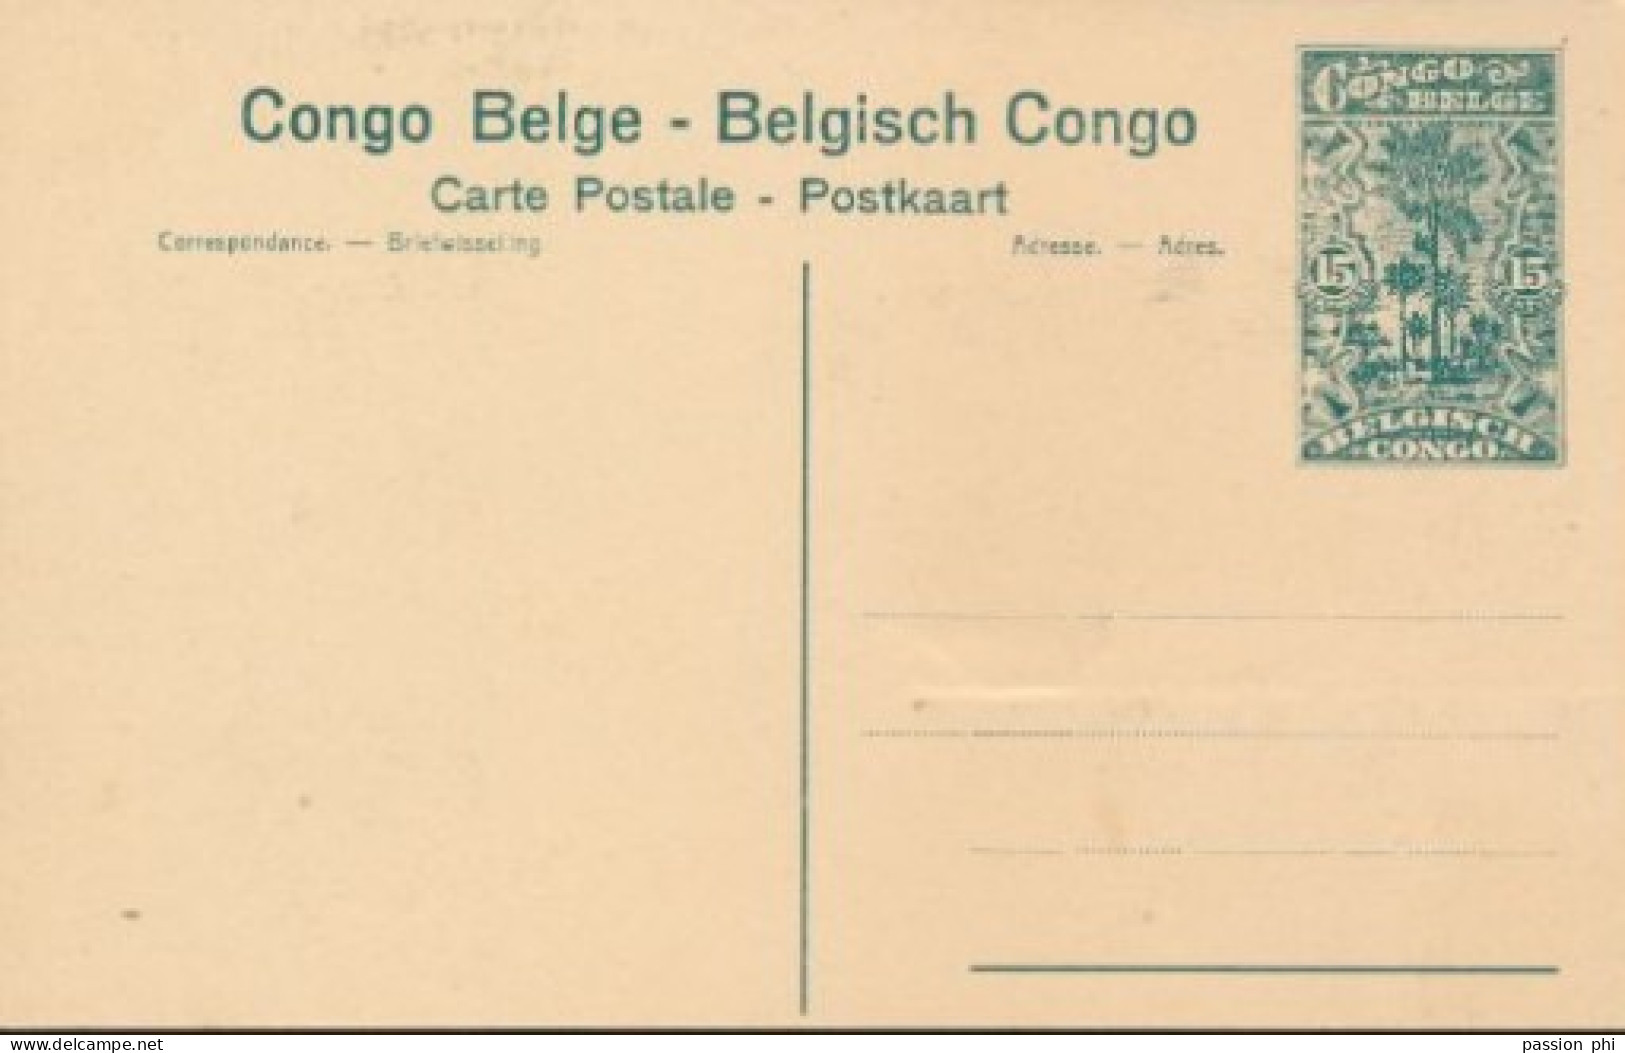 BELGIAN CONGO PPS SBEP 61 VIEW 83 UNUSED - Interi Postali